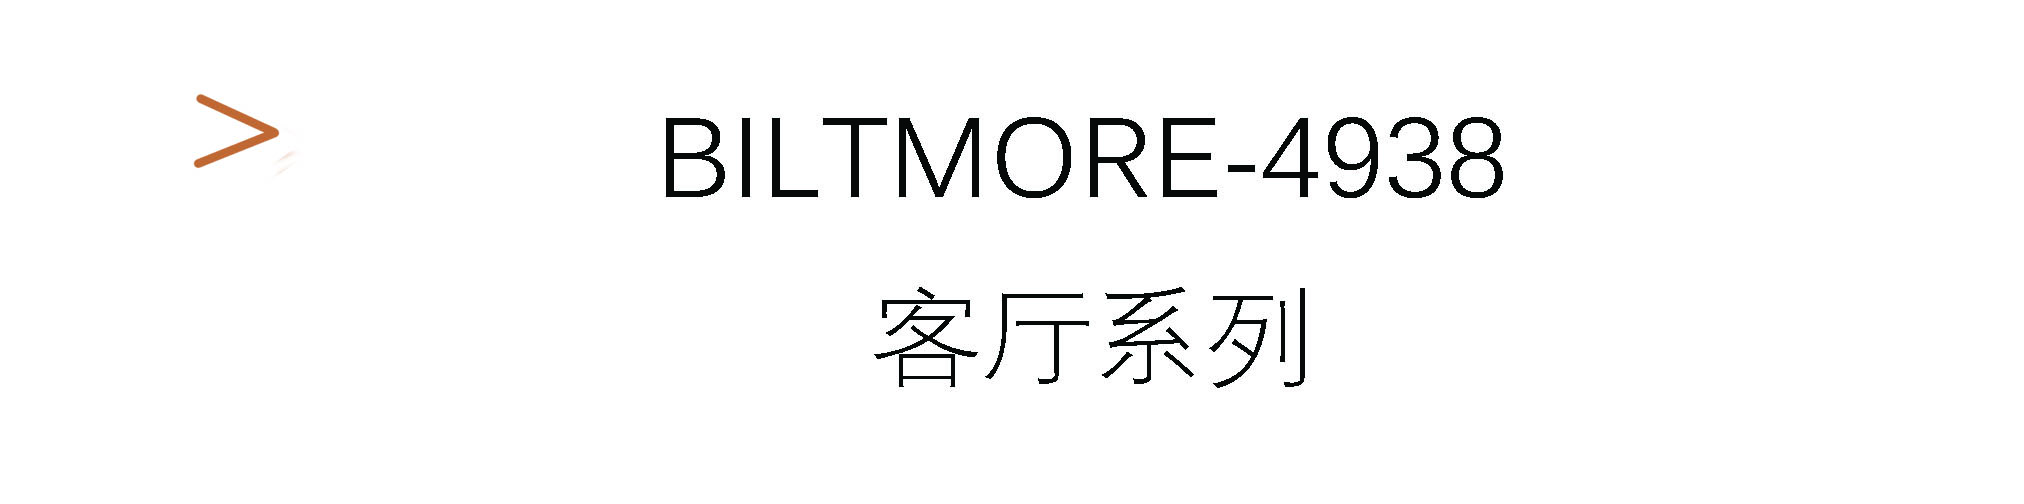 Biltmore-4938